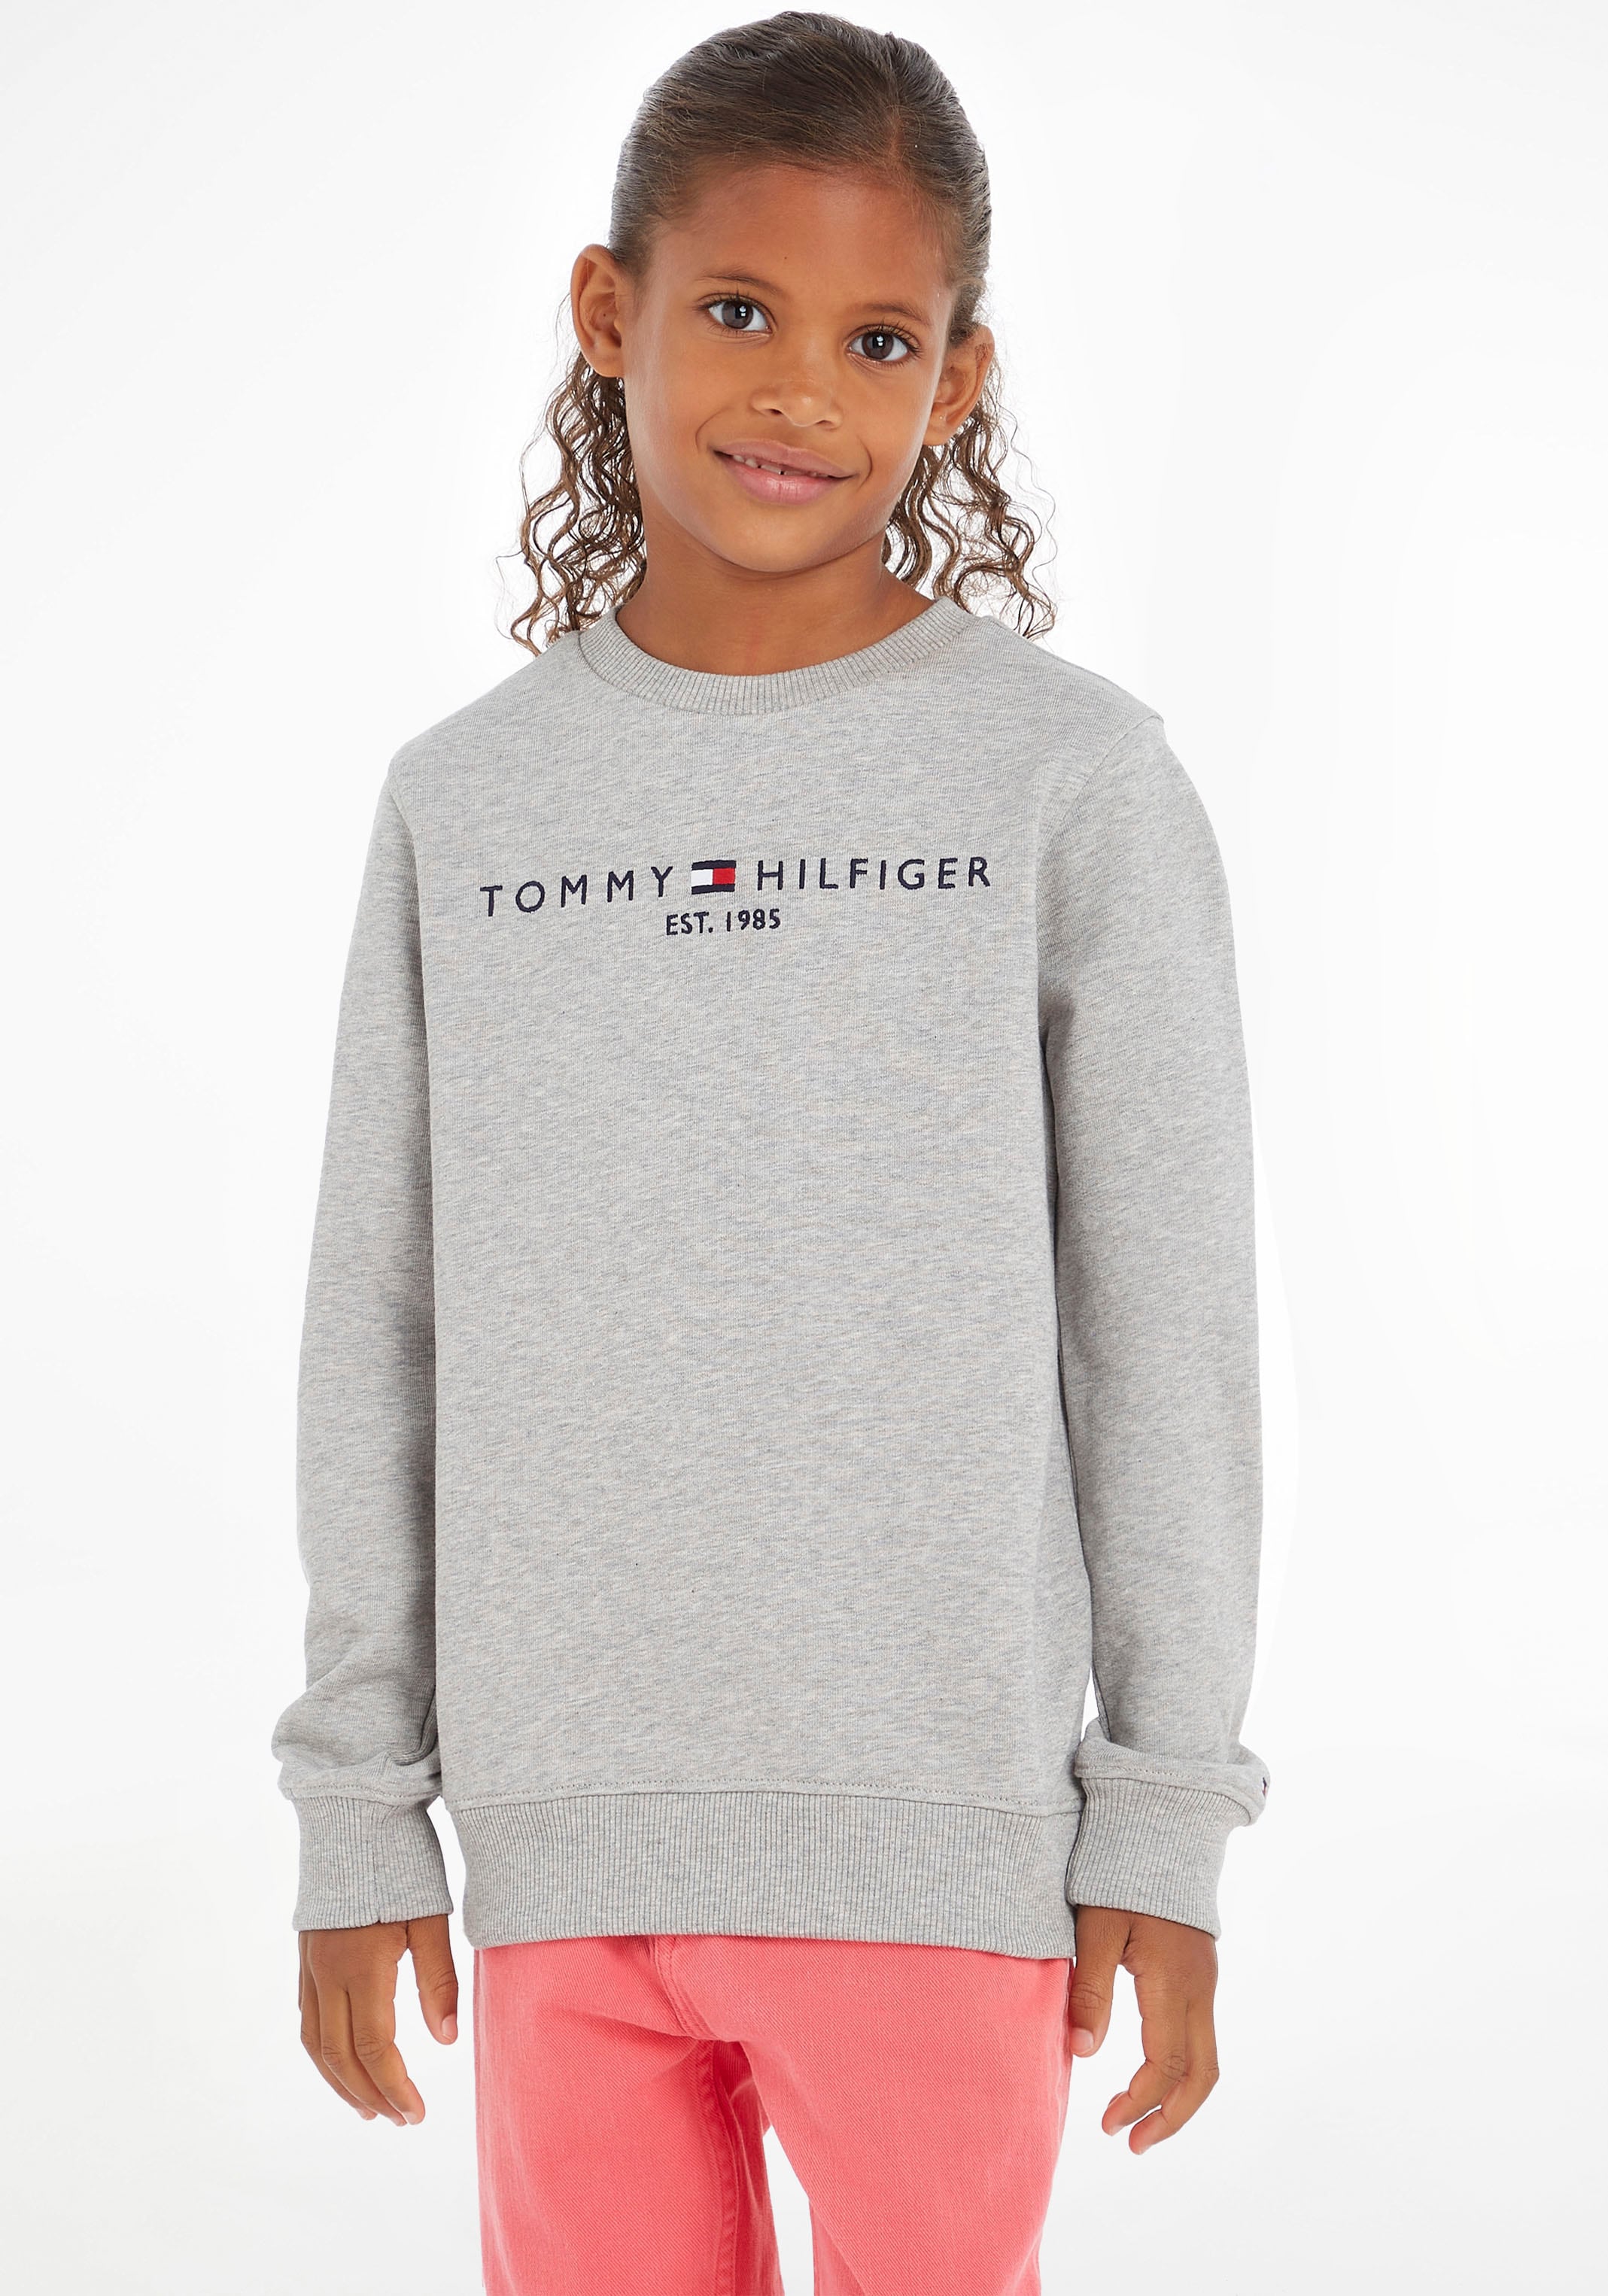 Tommy Hilfiger Sweatshirt Kinder bei Junior Kids MiniMe,für »ESSENTIAL Jungen OTTO und Mädchen SWEATSHIRT«